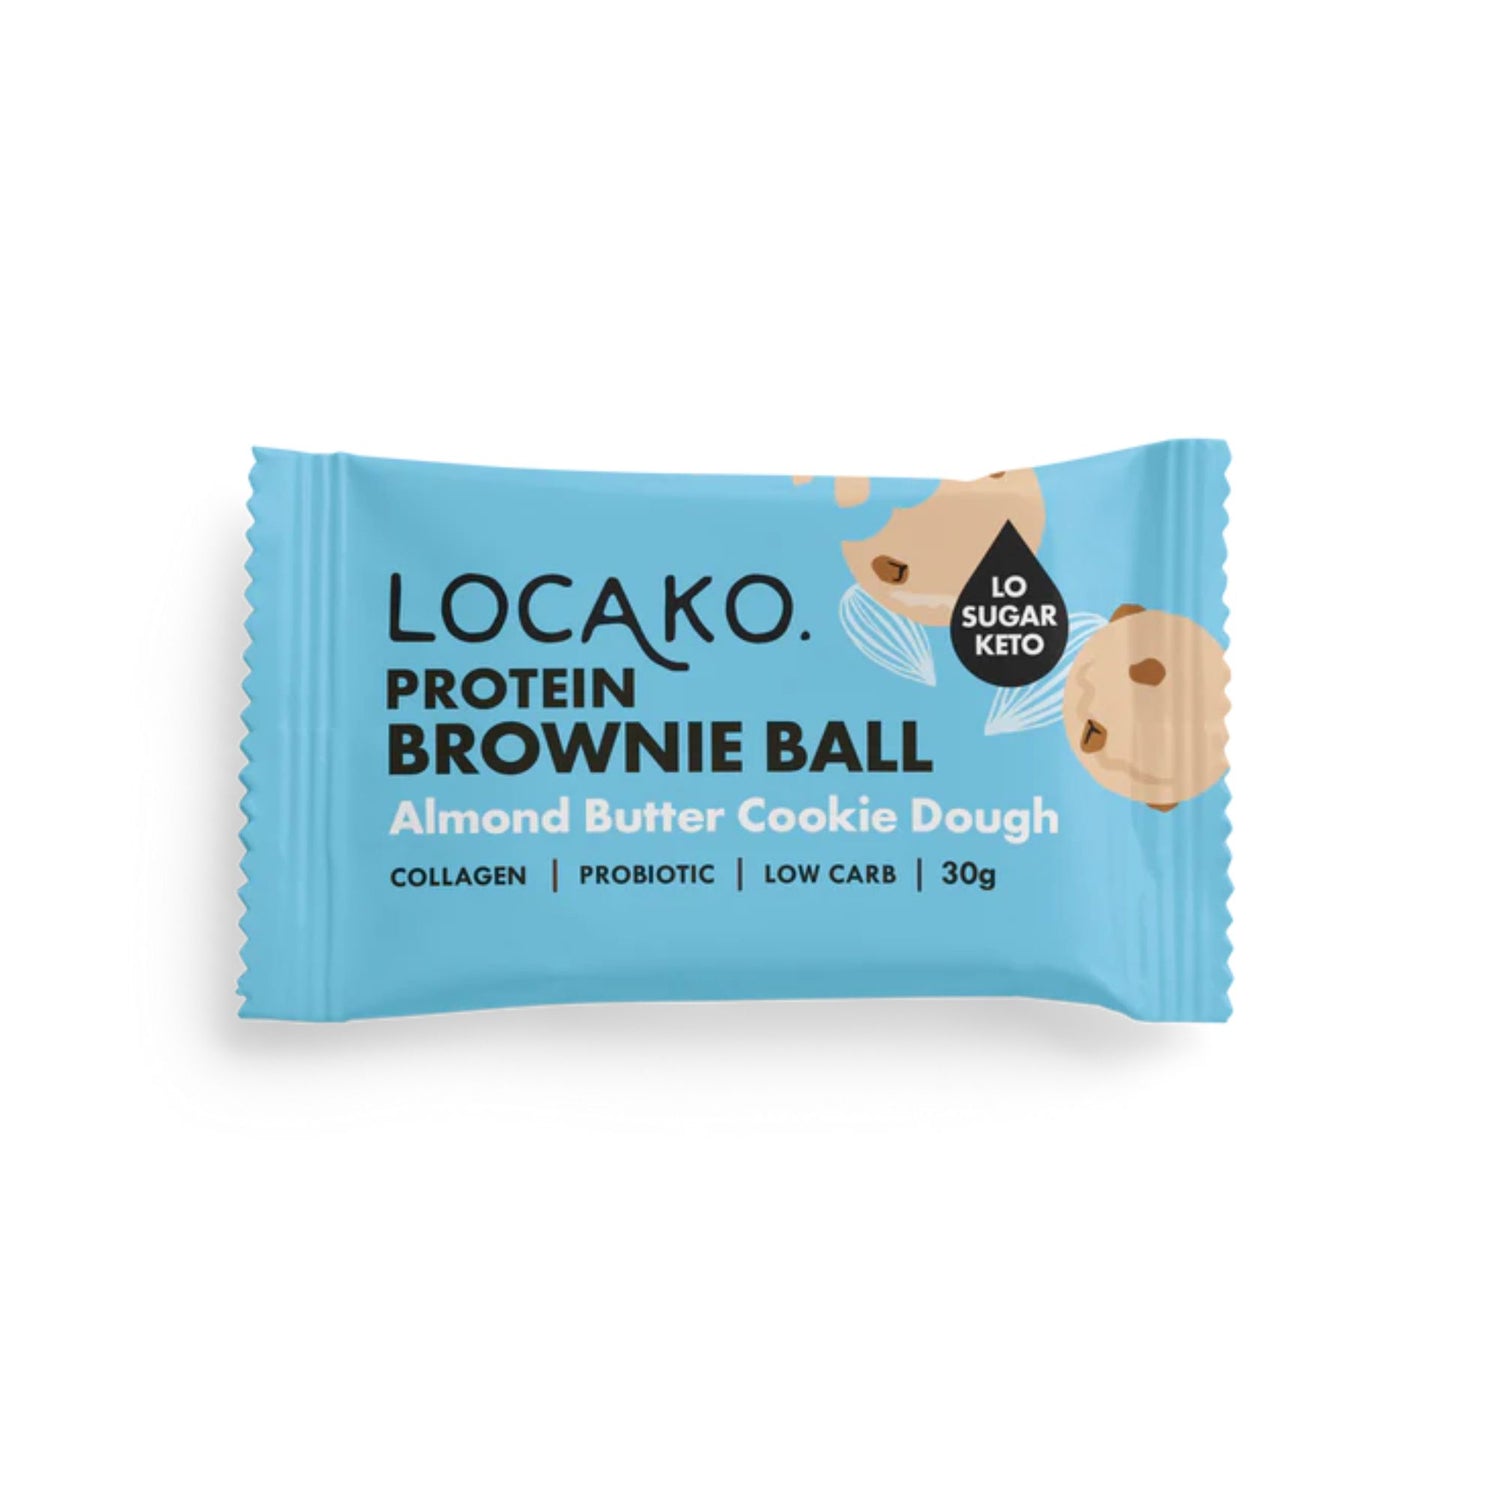 Protein Brownie Balls